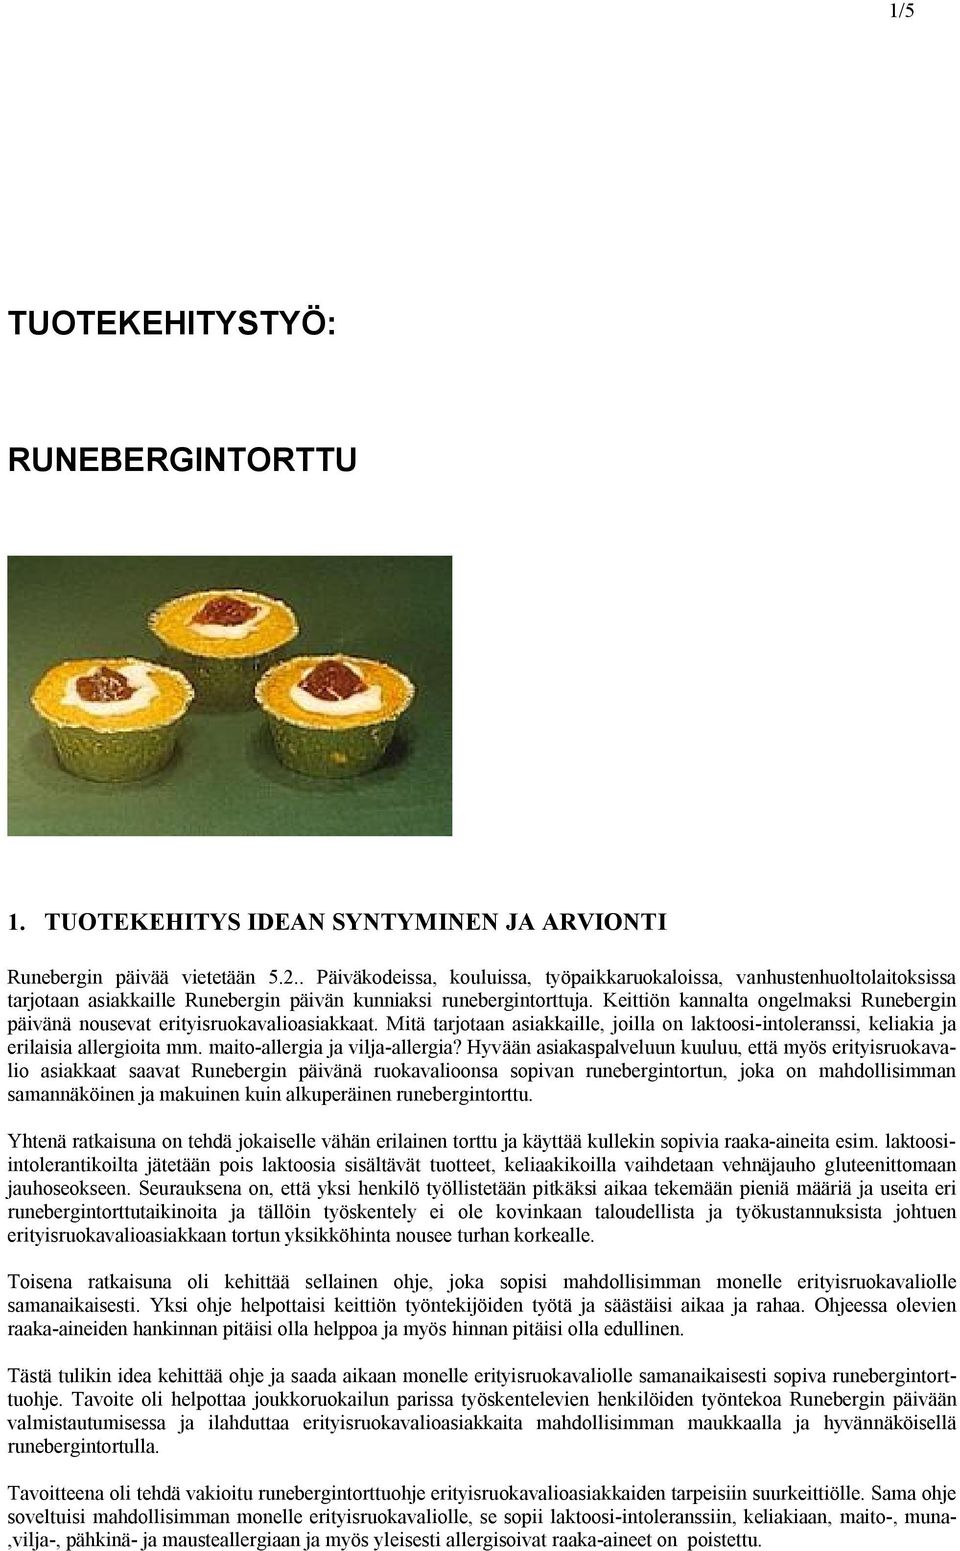 Keittiön kannalta ongelmaksi Runebergin päivänä nousevat erityisruokavalioasiakkaat. Mitä tarjotaan asiakkaille, joilla on laktoosi-intoleranssi, keliakia ja erilaisia allergioita mm.